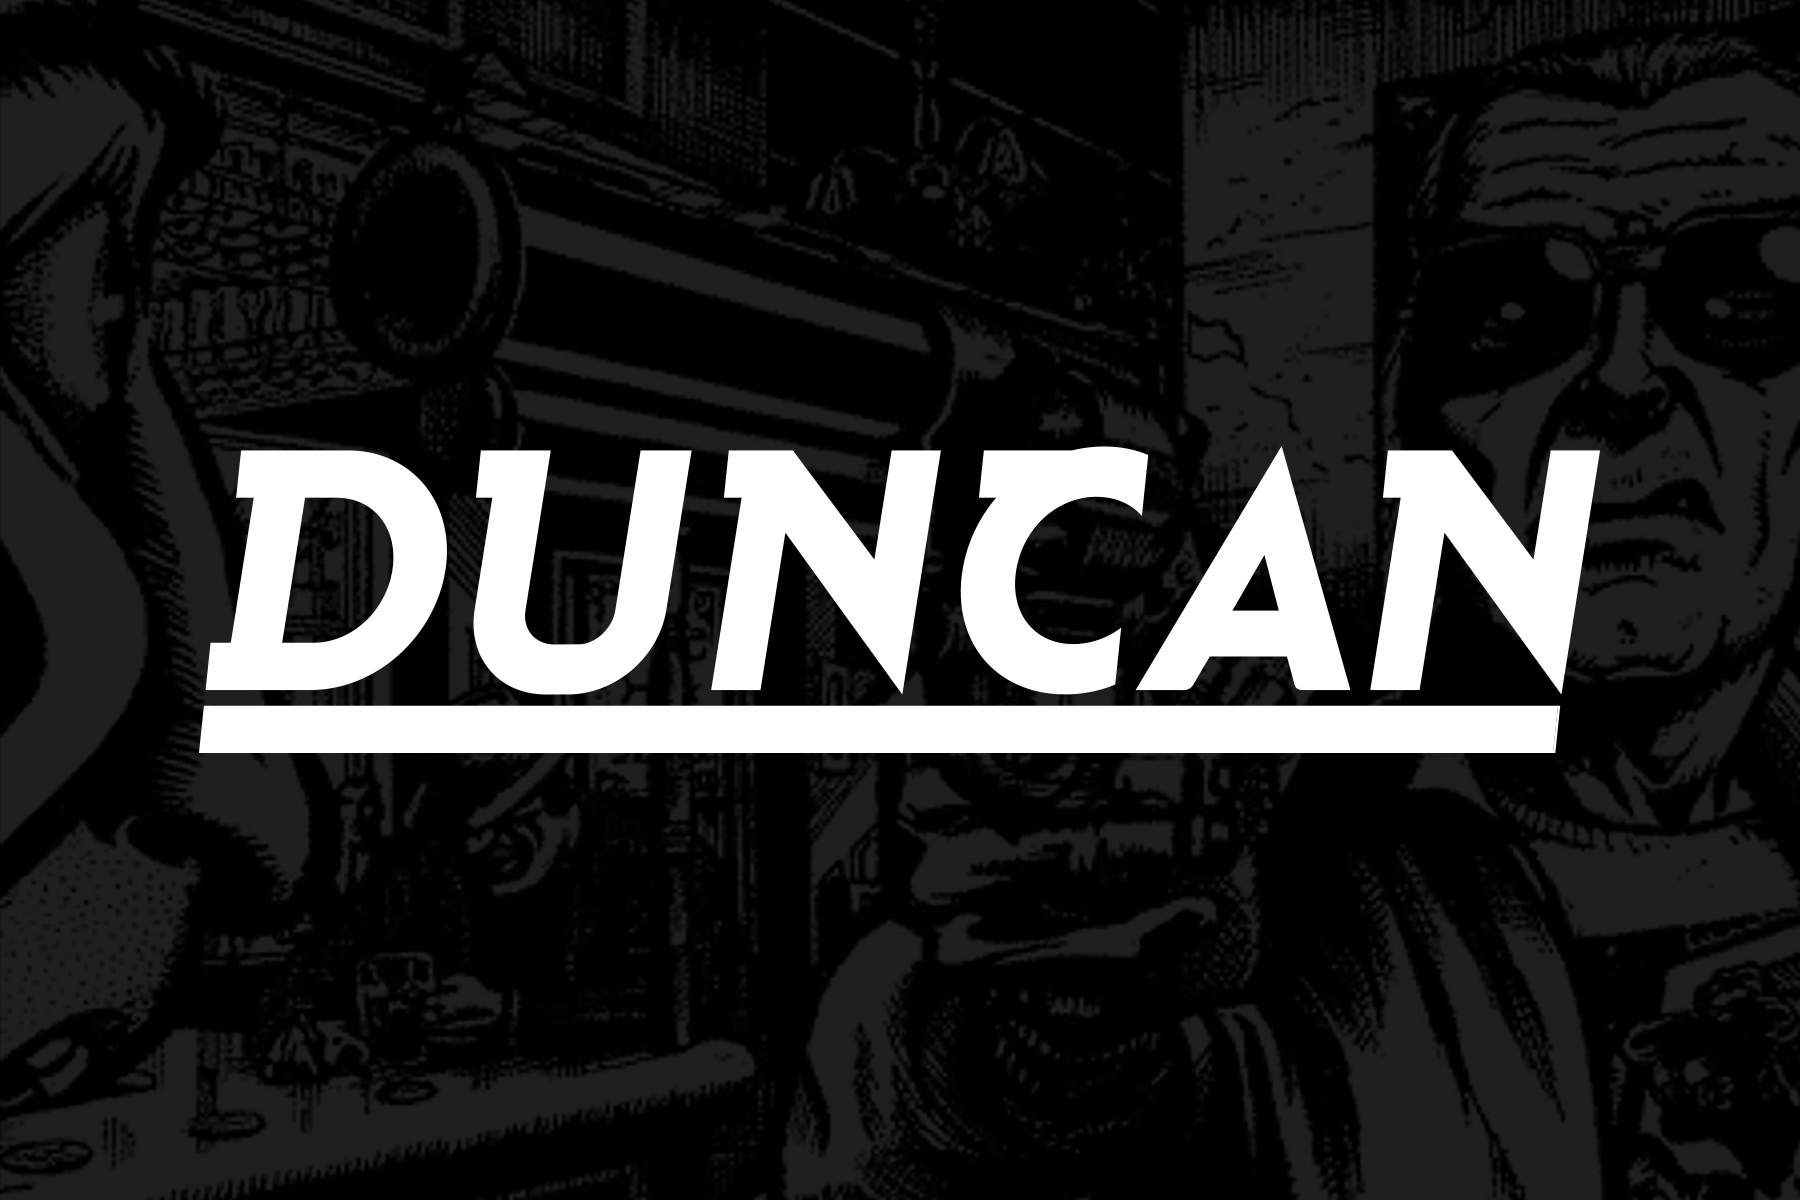 duncan-logo.jpg